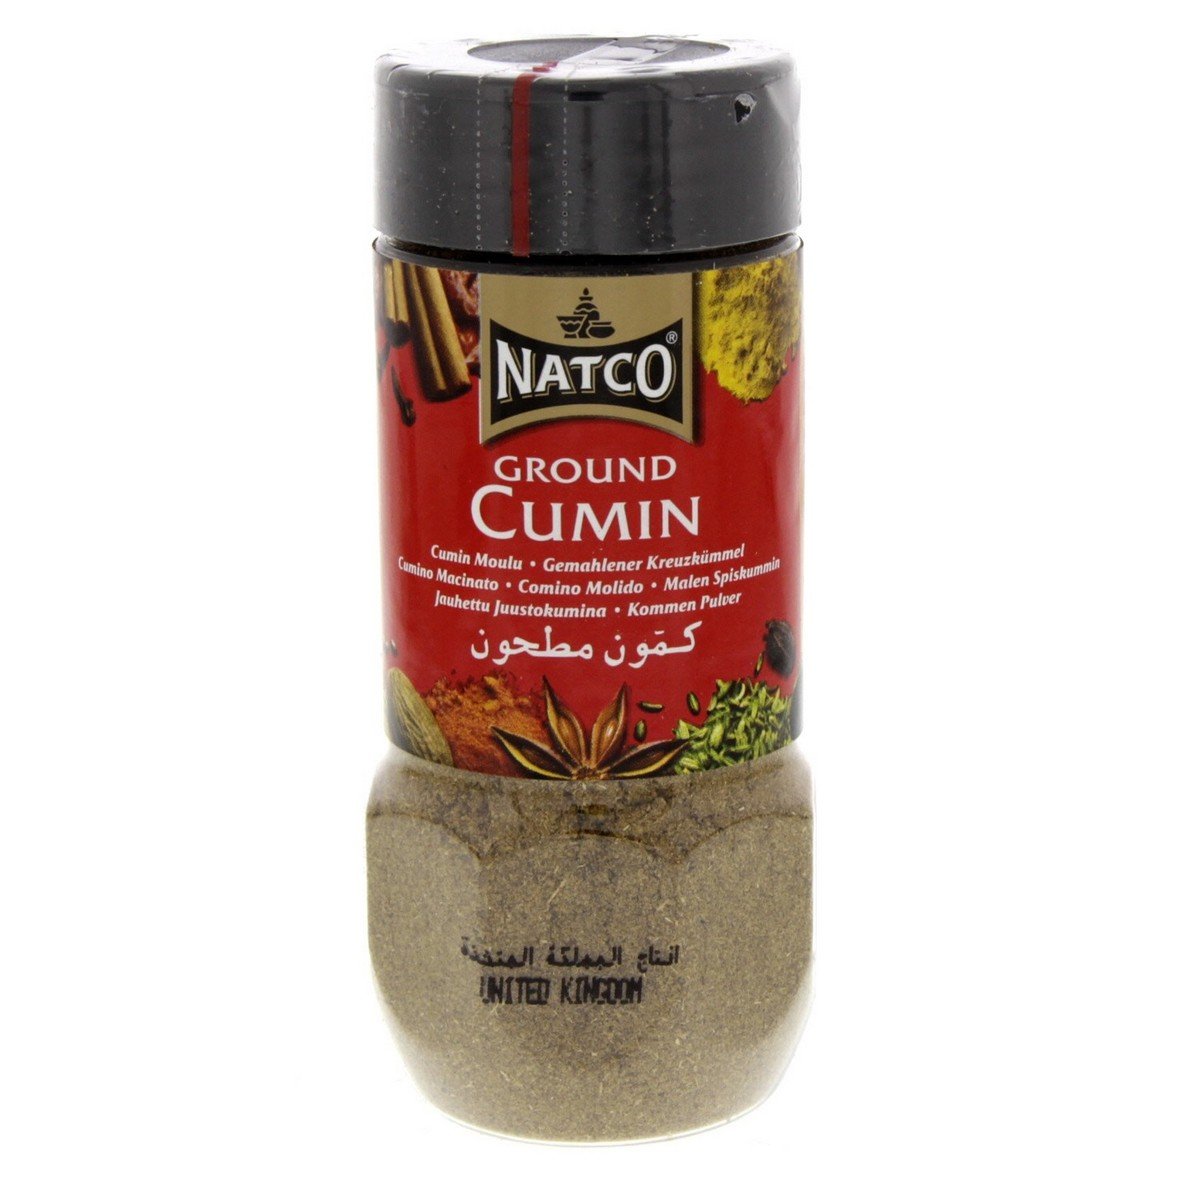 Natco Ground Cumin 100 g